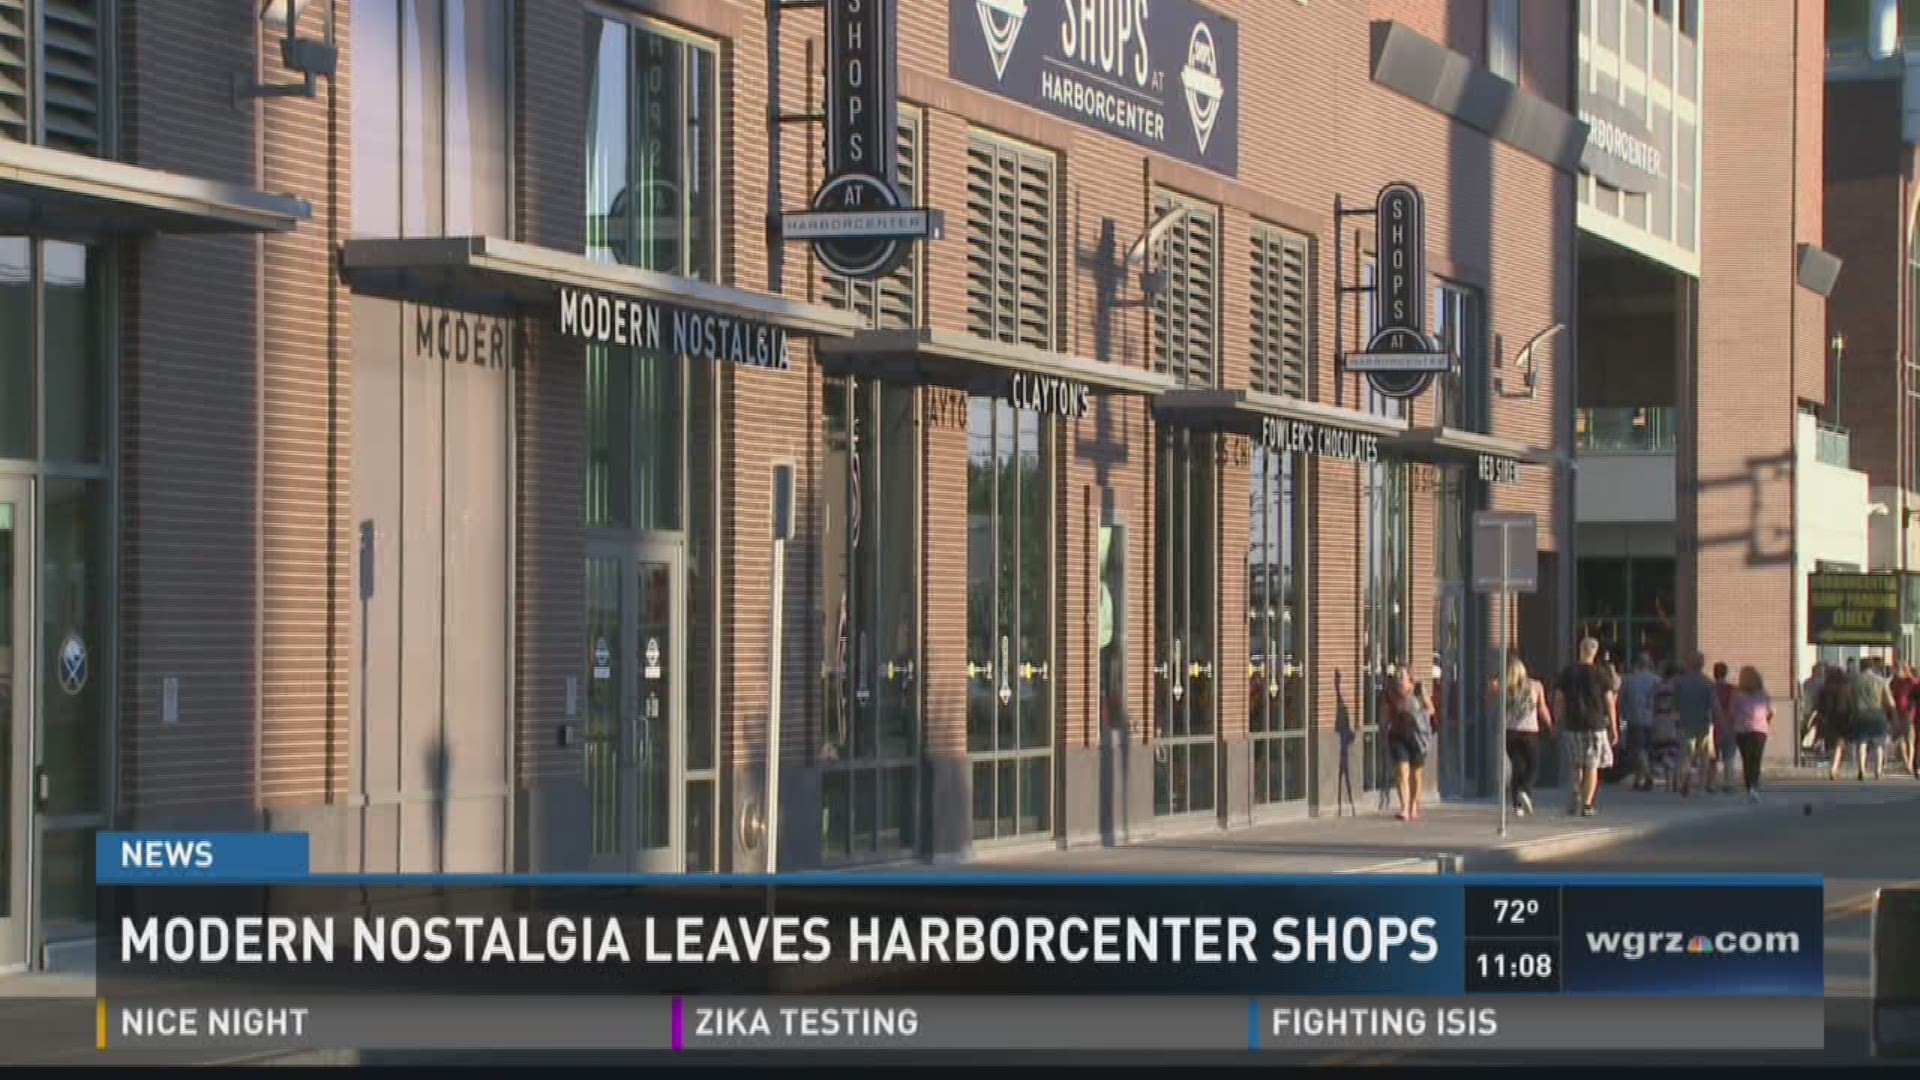 Modern Nostalgia leave Harborcenter shops